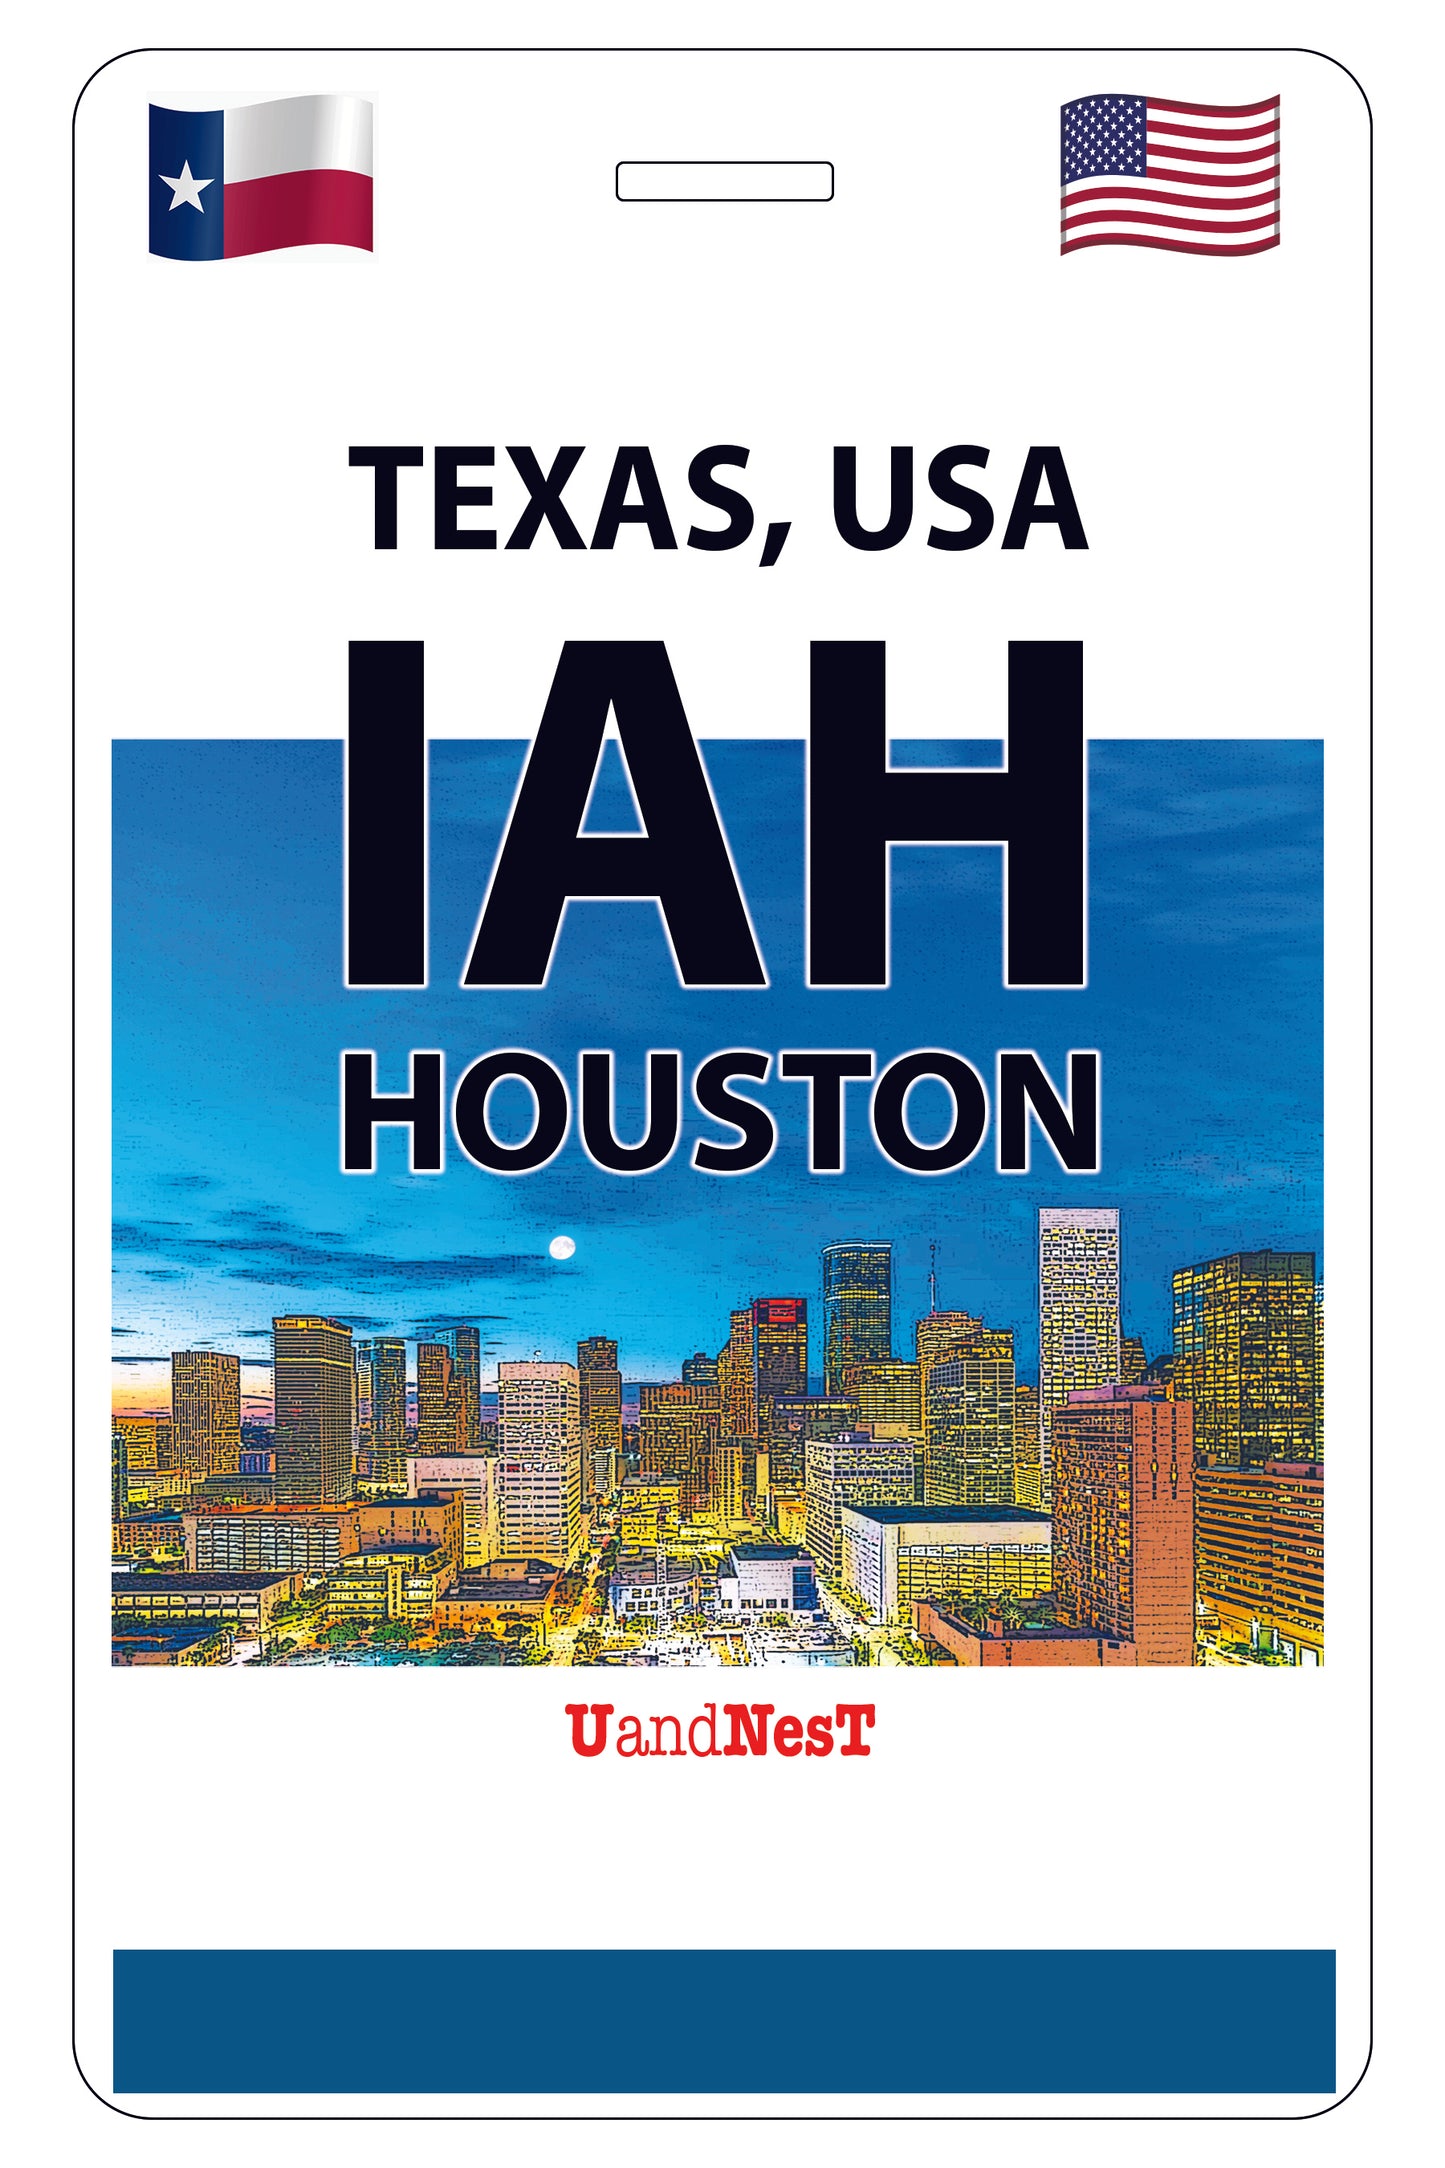 IAH Houston Texas, USA